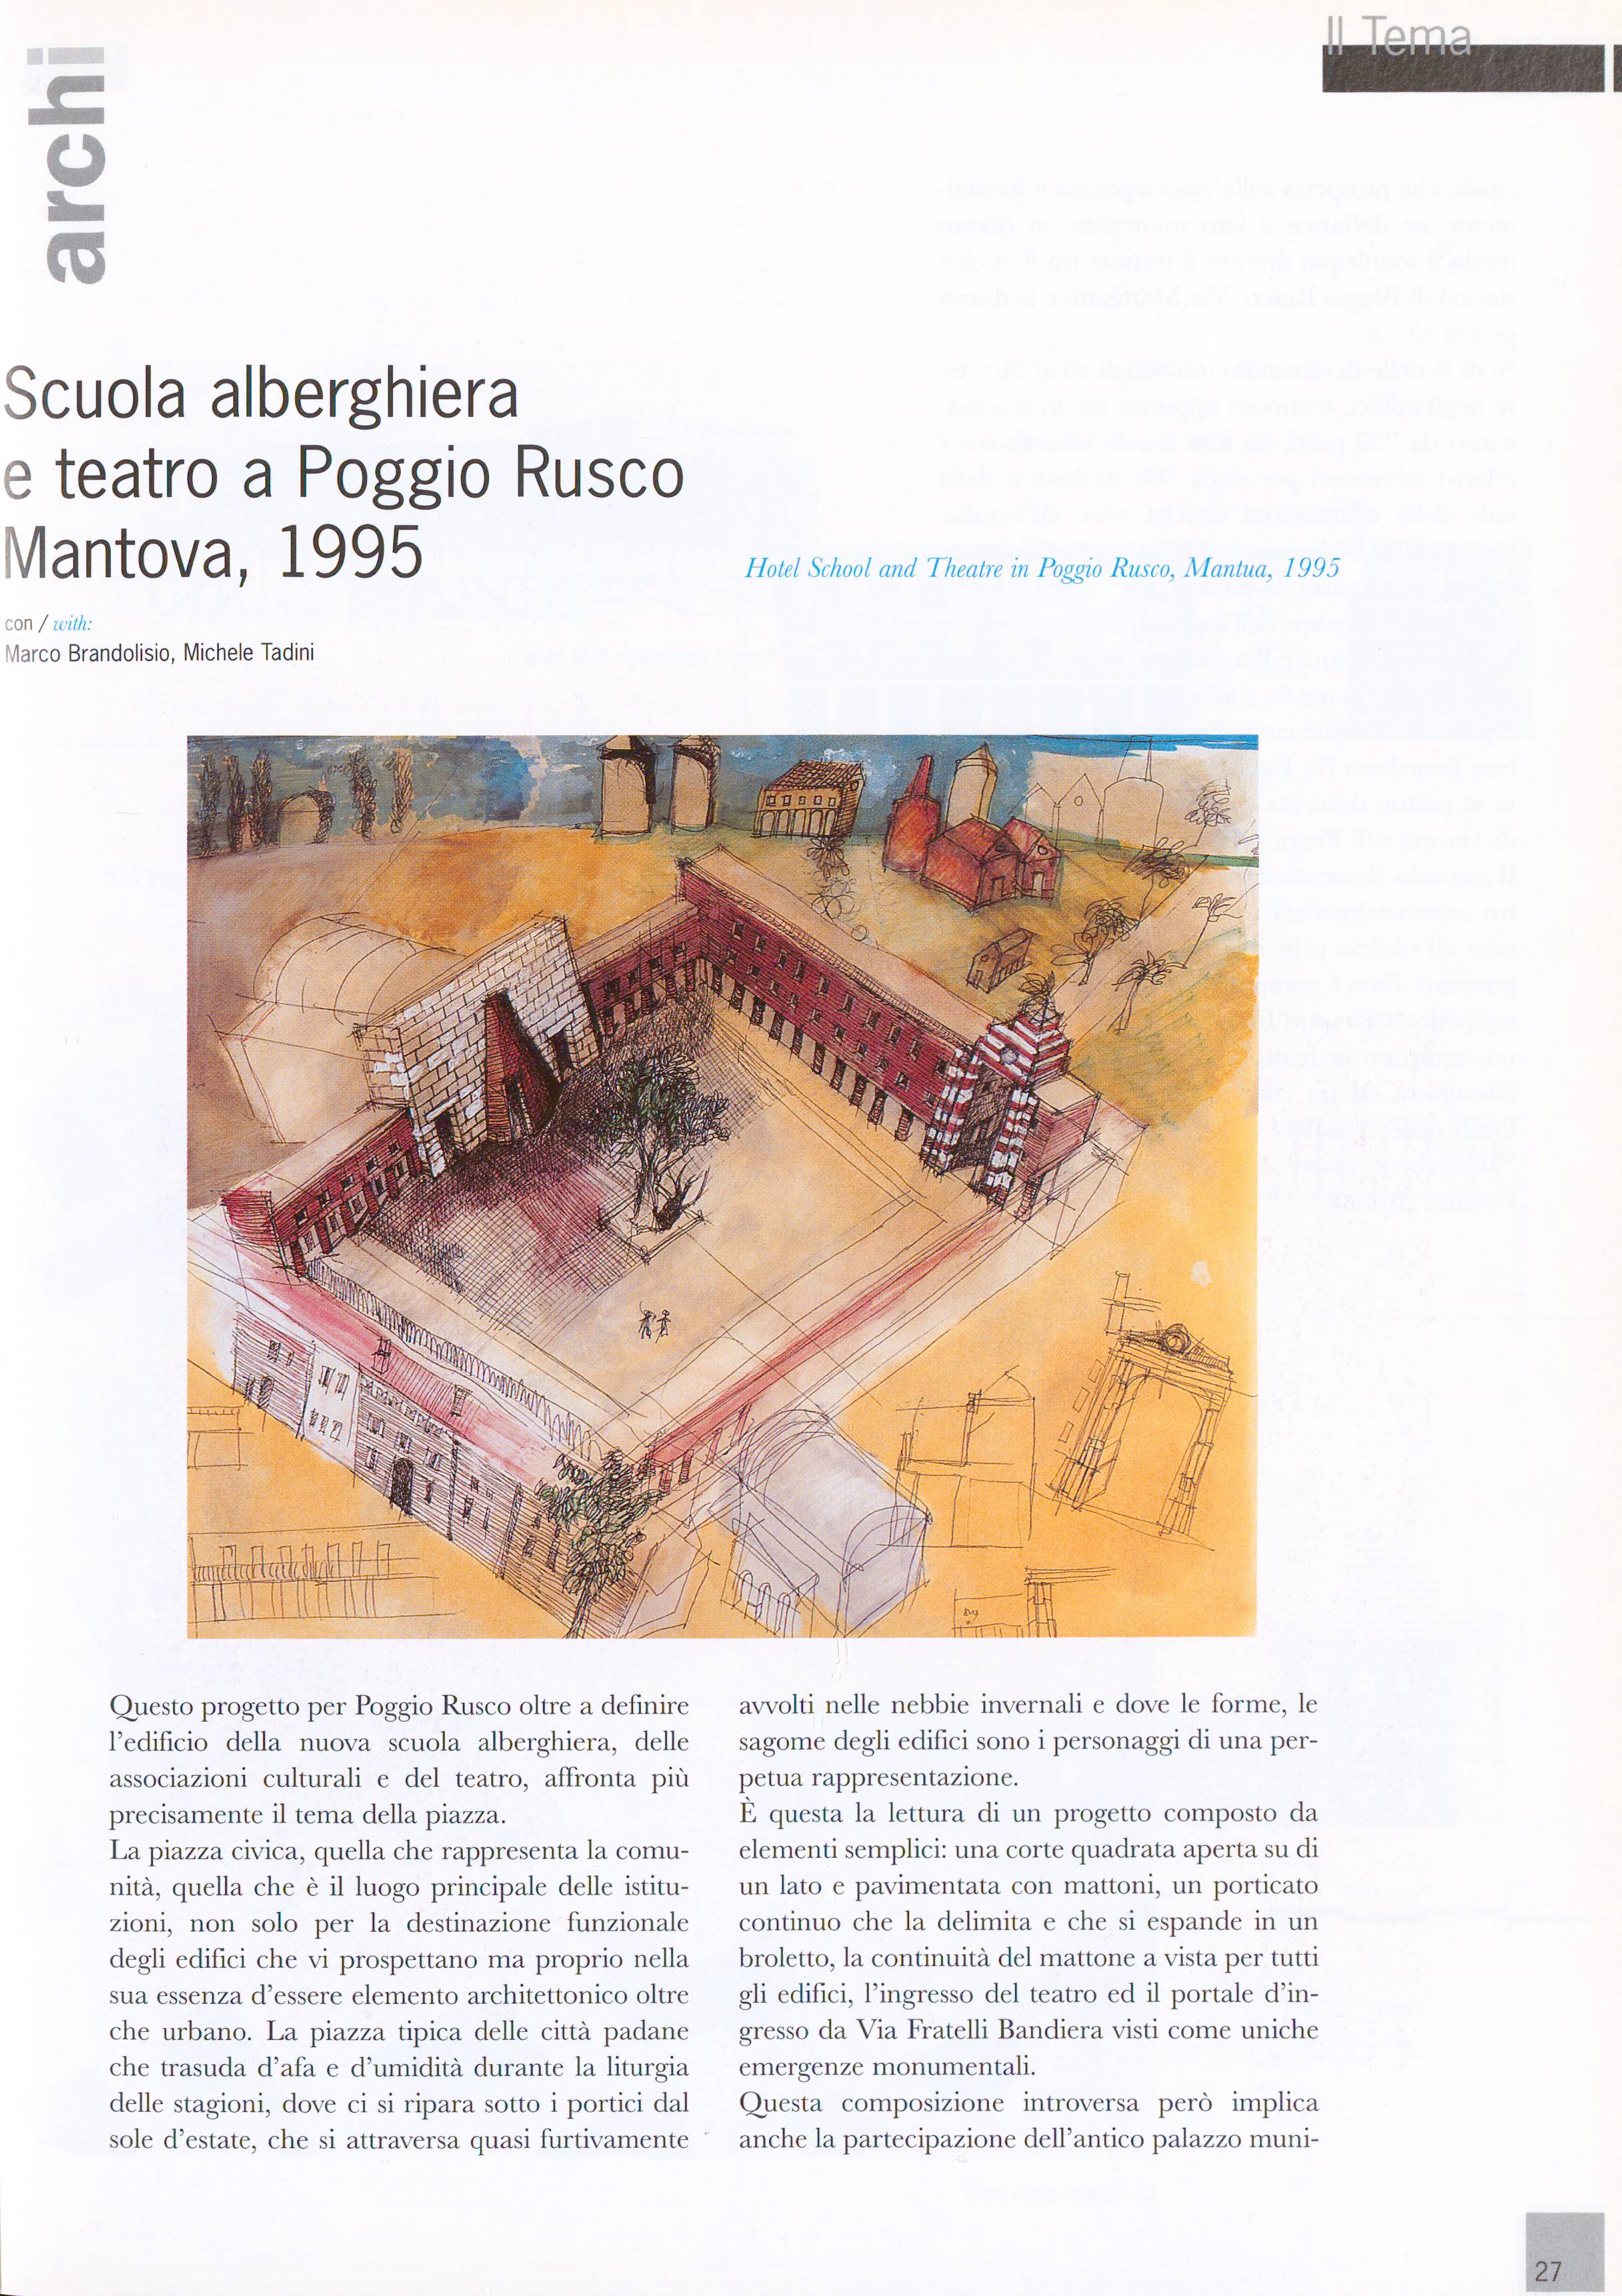 o Cu Scuola alberghiera e teatro a Poggio Rusco Mantova, 1995 Hotel School and Theatre in Poggio Rusco, Mantua, 1995 con / with: Marco Brandolisio, Michele Tadini ^,- J?3 / /.«ft*.